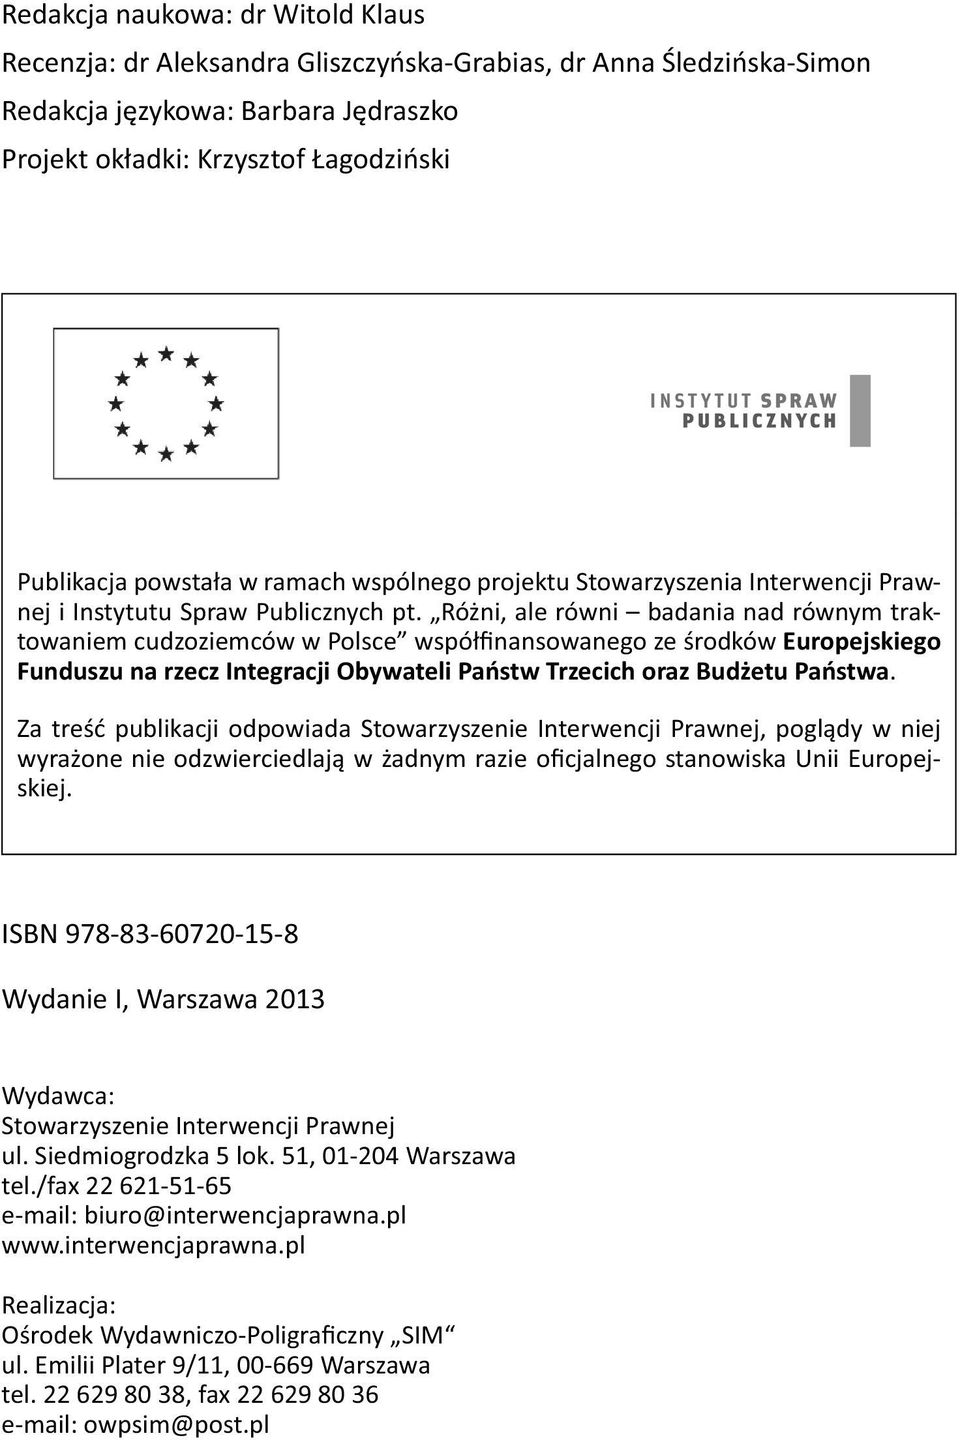 Różni, ale równi badania nad równym traktowaniem cudzoziemców w Polsce współfinansowanego ze środków Europejskiego Funduszu na rzecz Integracji Obywateli Państw Trzecich oraz Budżetu Państwa.